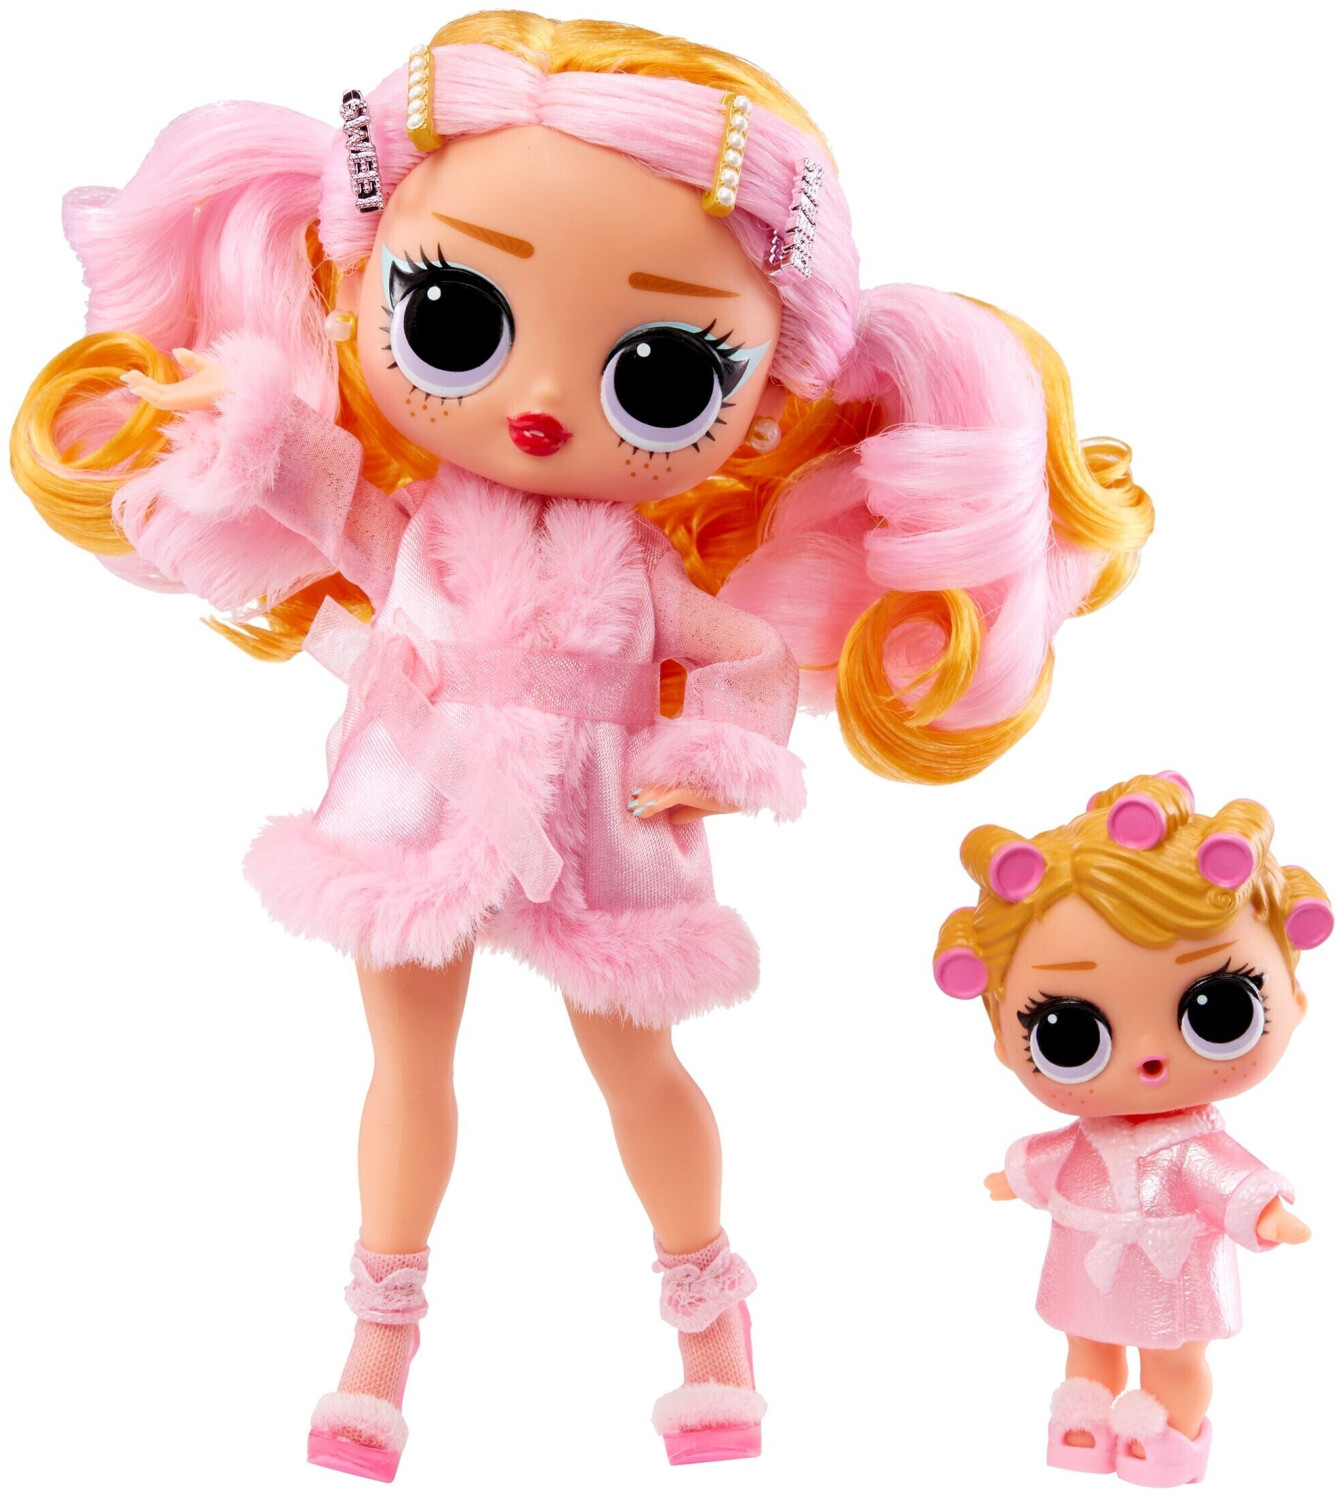 Photos - Doll LOL Surprise MGA Entertainment MGA Entertainment L.O.L. Surprise Tweens Babysitting Par 